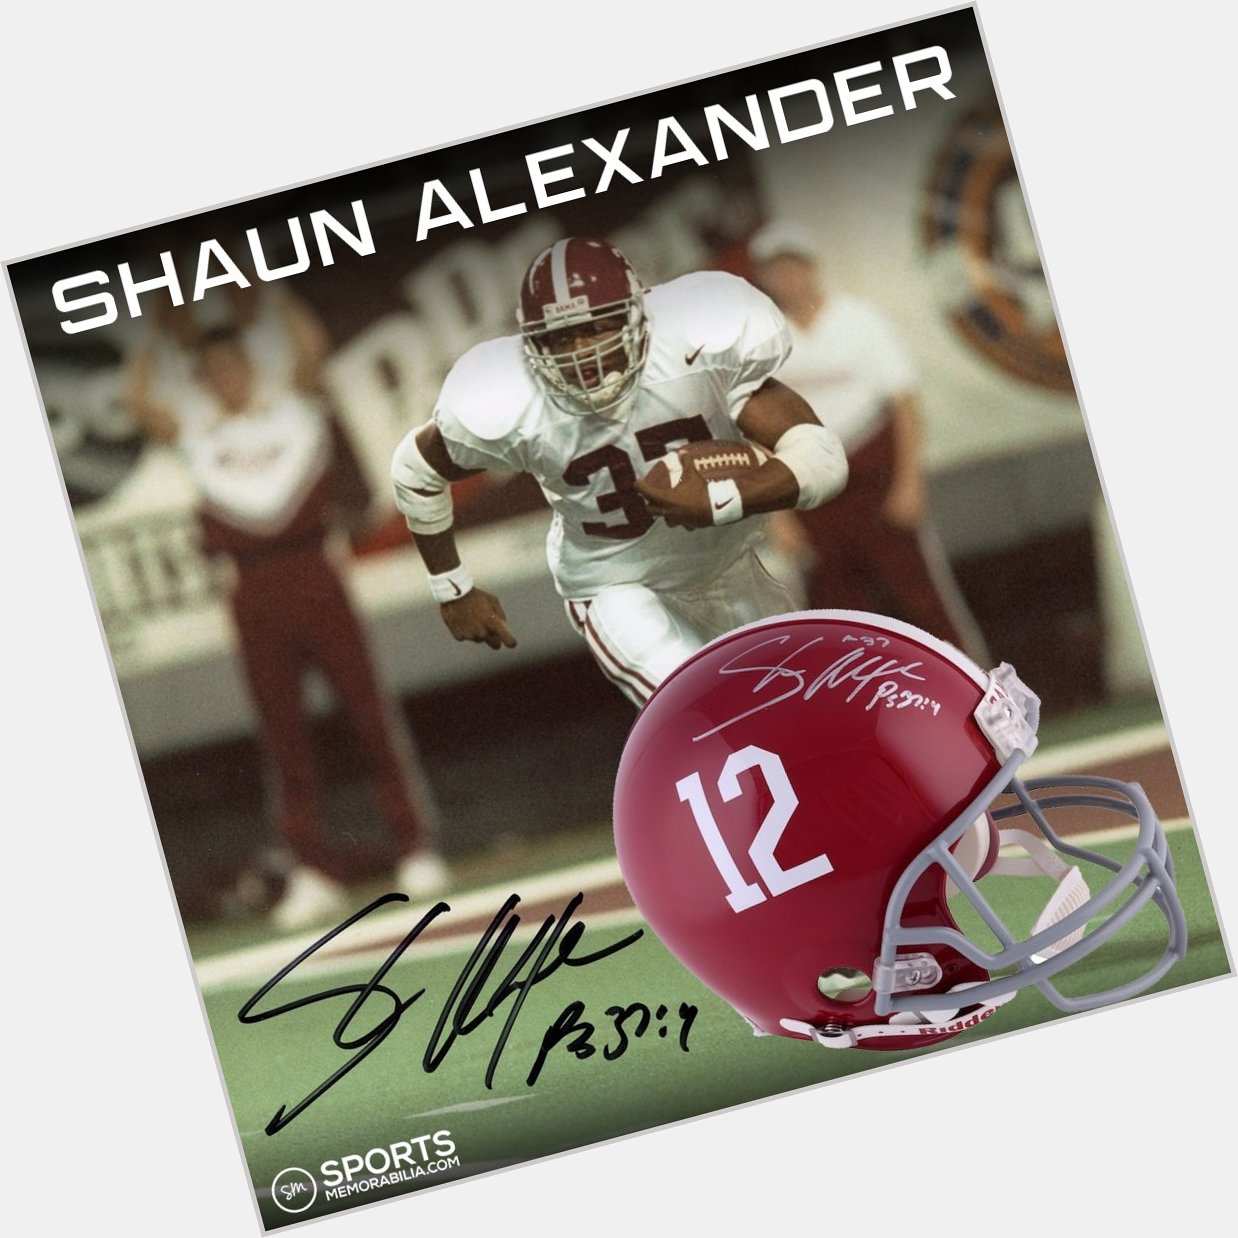 Happy Birthday legend Shaun Alexander!  